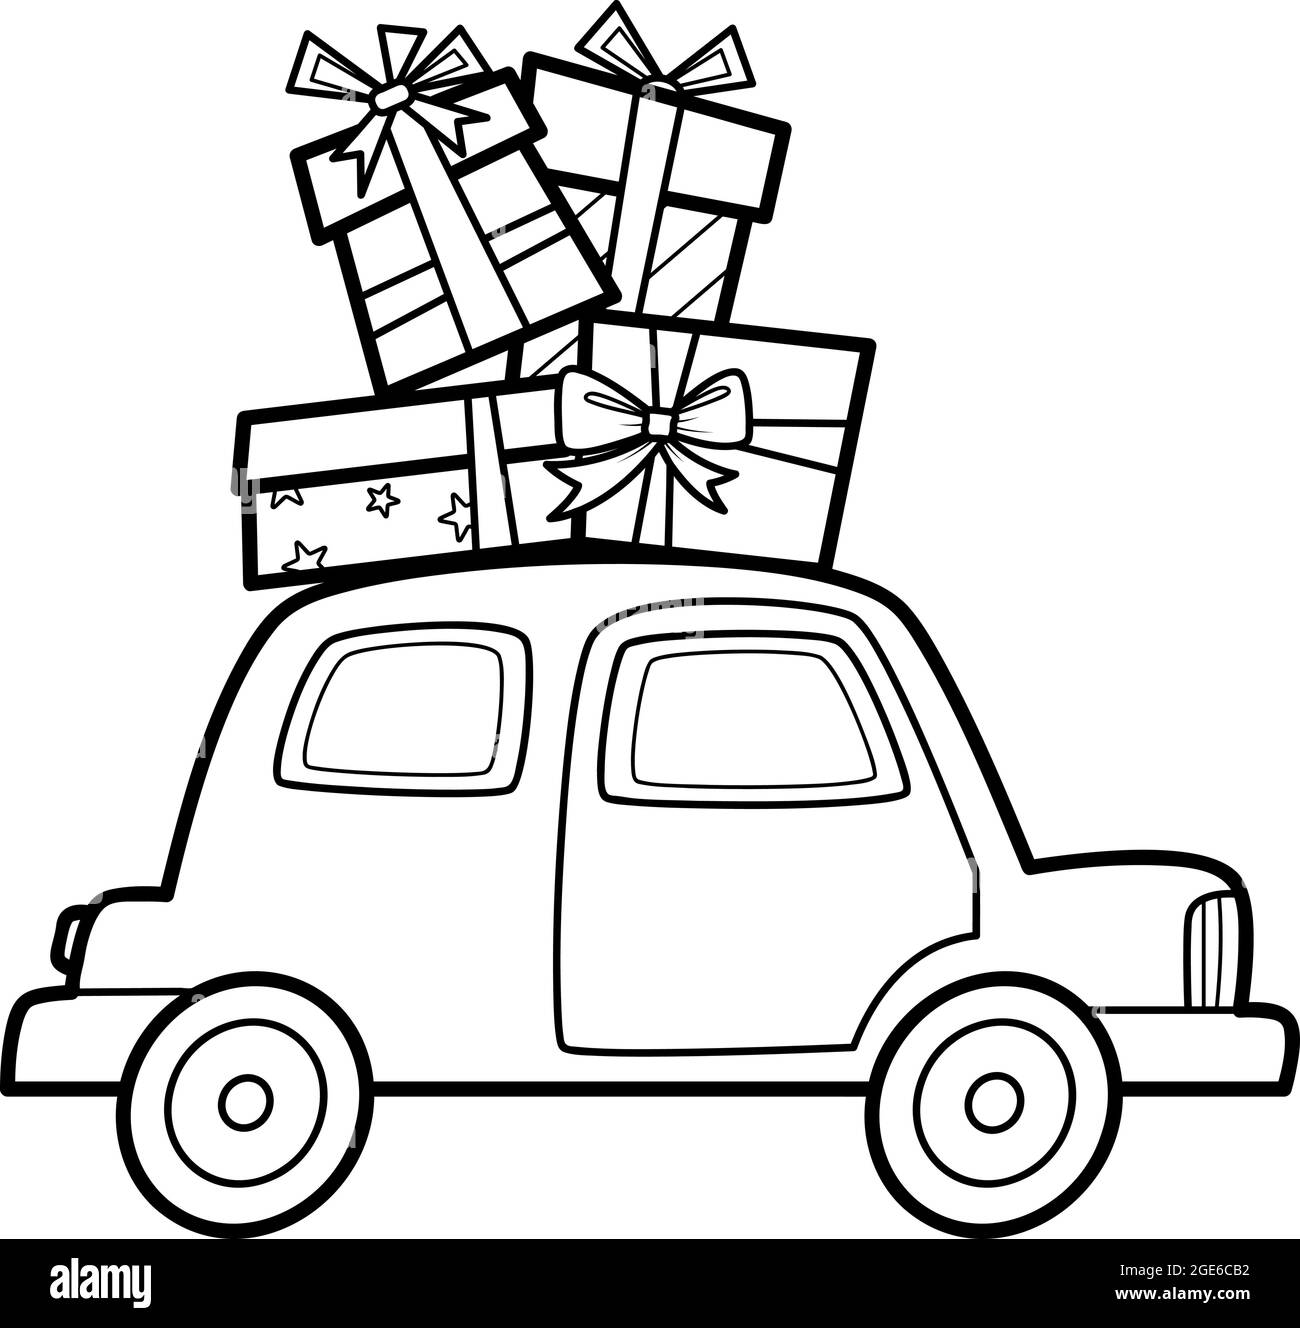 Weihnachten zum ausmalen Buch oder Seite für Kinder. Auto und Geschenke  schwarz-weiß Vektor-Illustration Stock-Vektorgrafik - Alamy